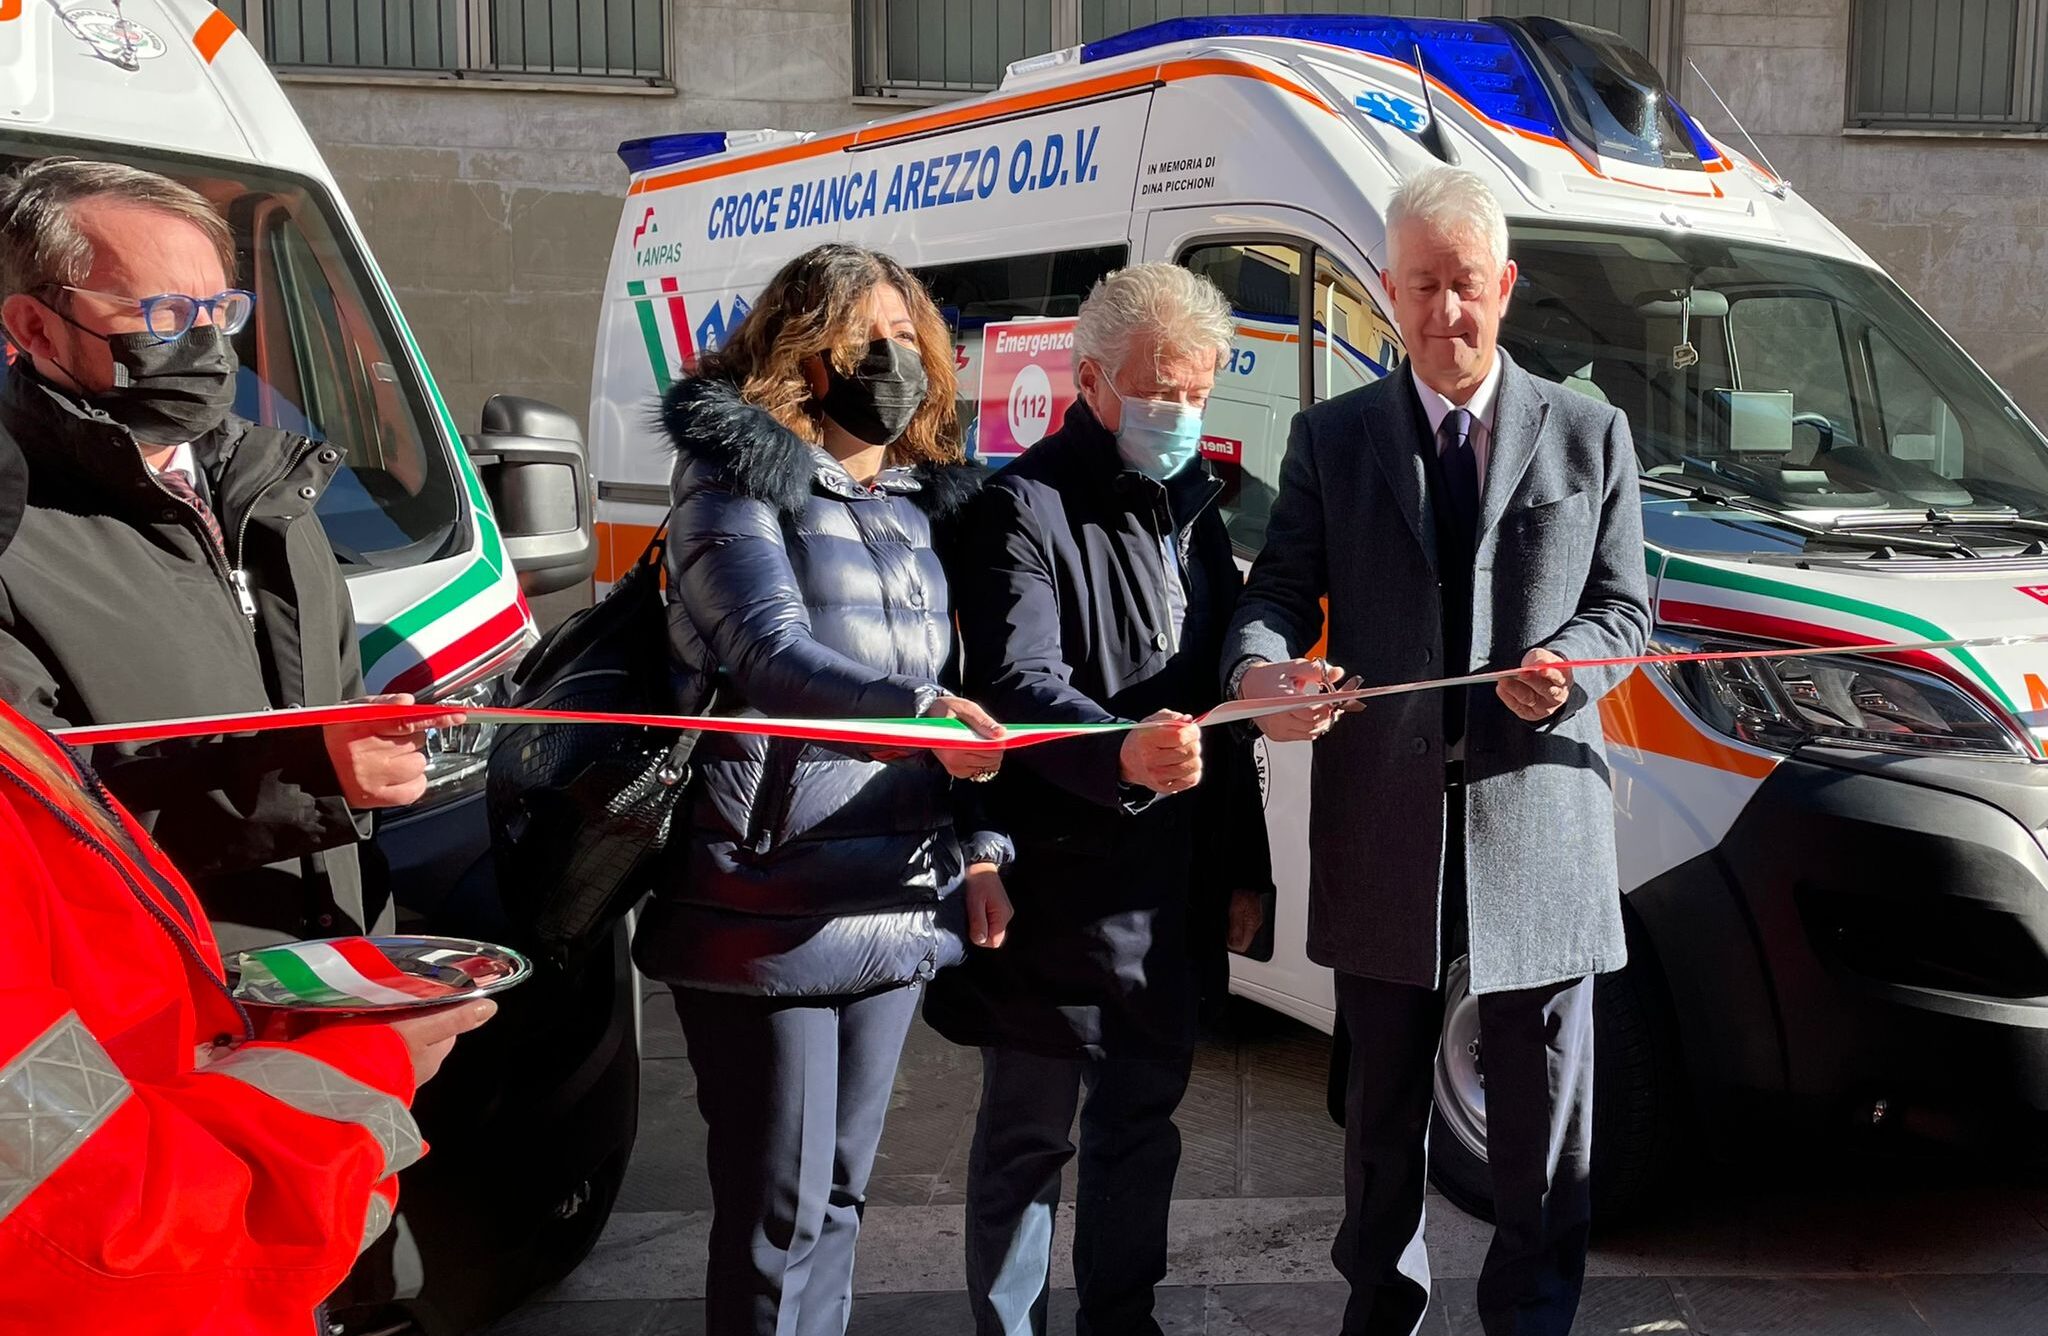 Entrano in servizio due nuove ambulanze della Croce Bianca di Arezzo